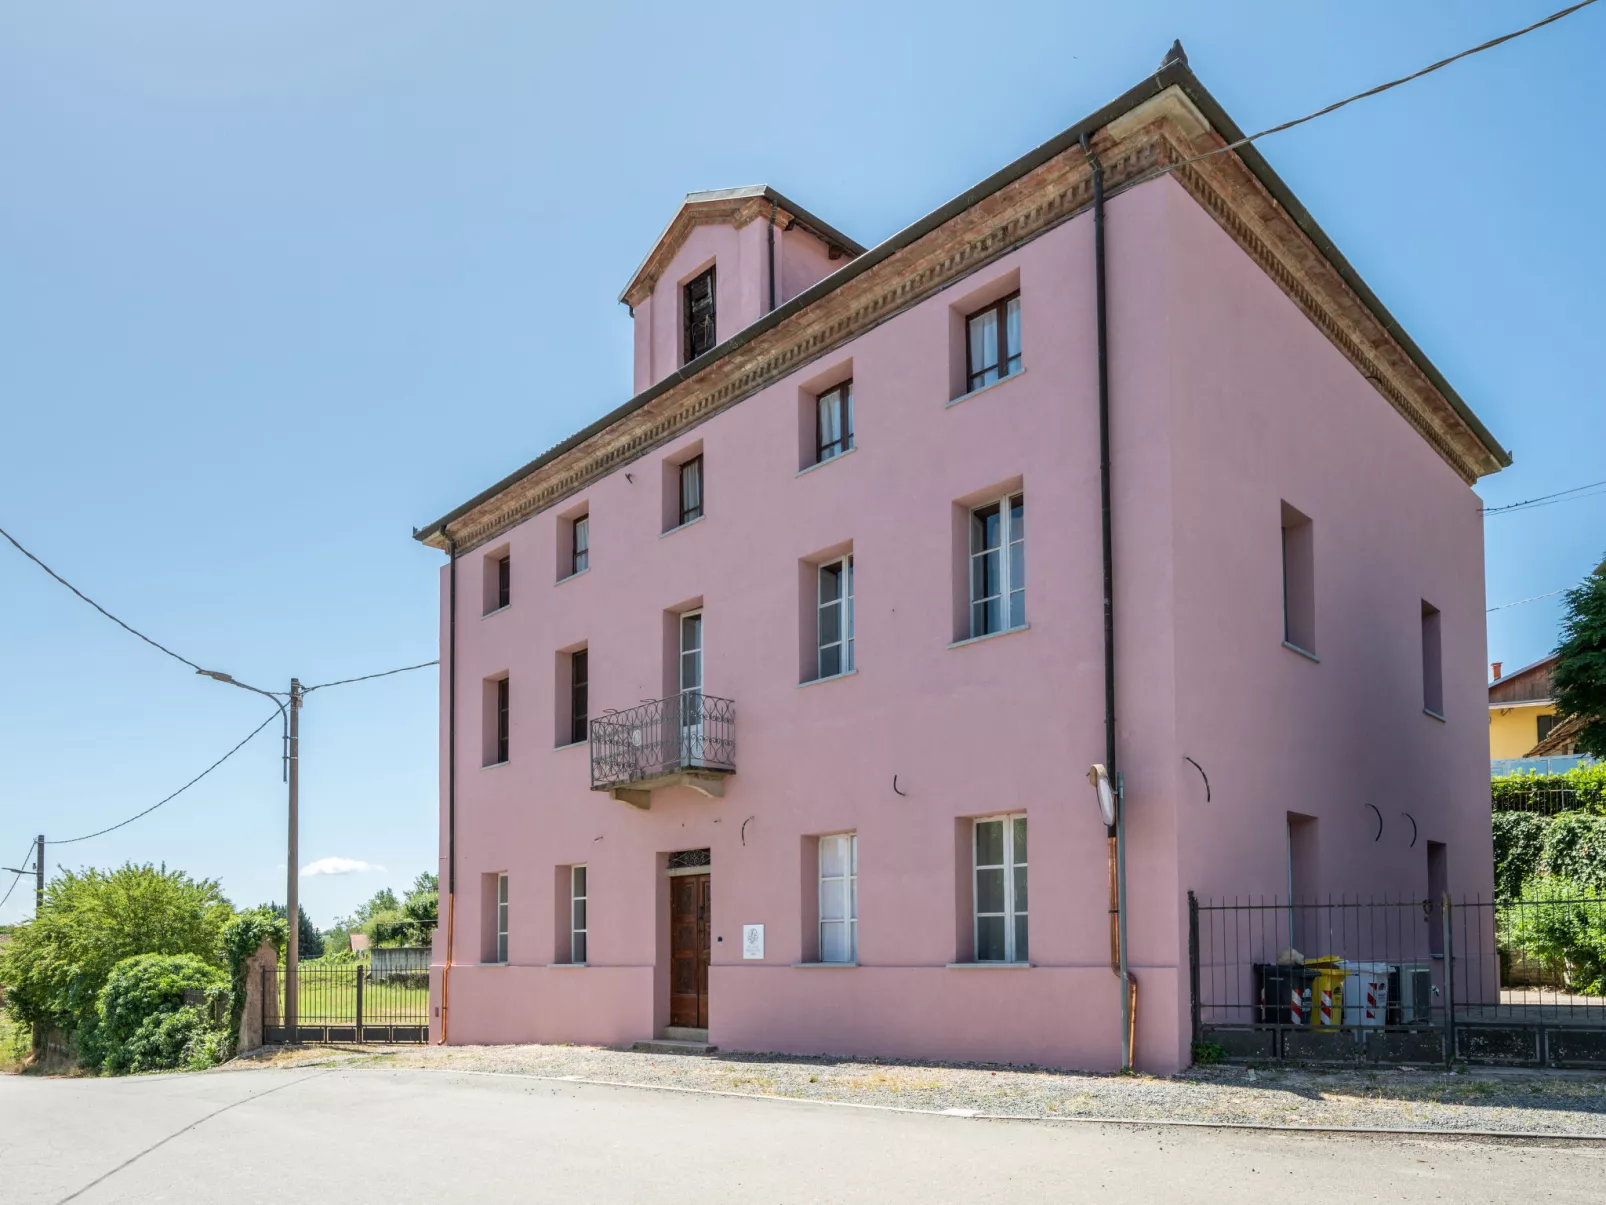 Palazzo Mariscotti-Buiten